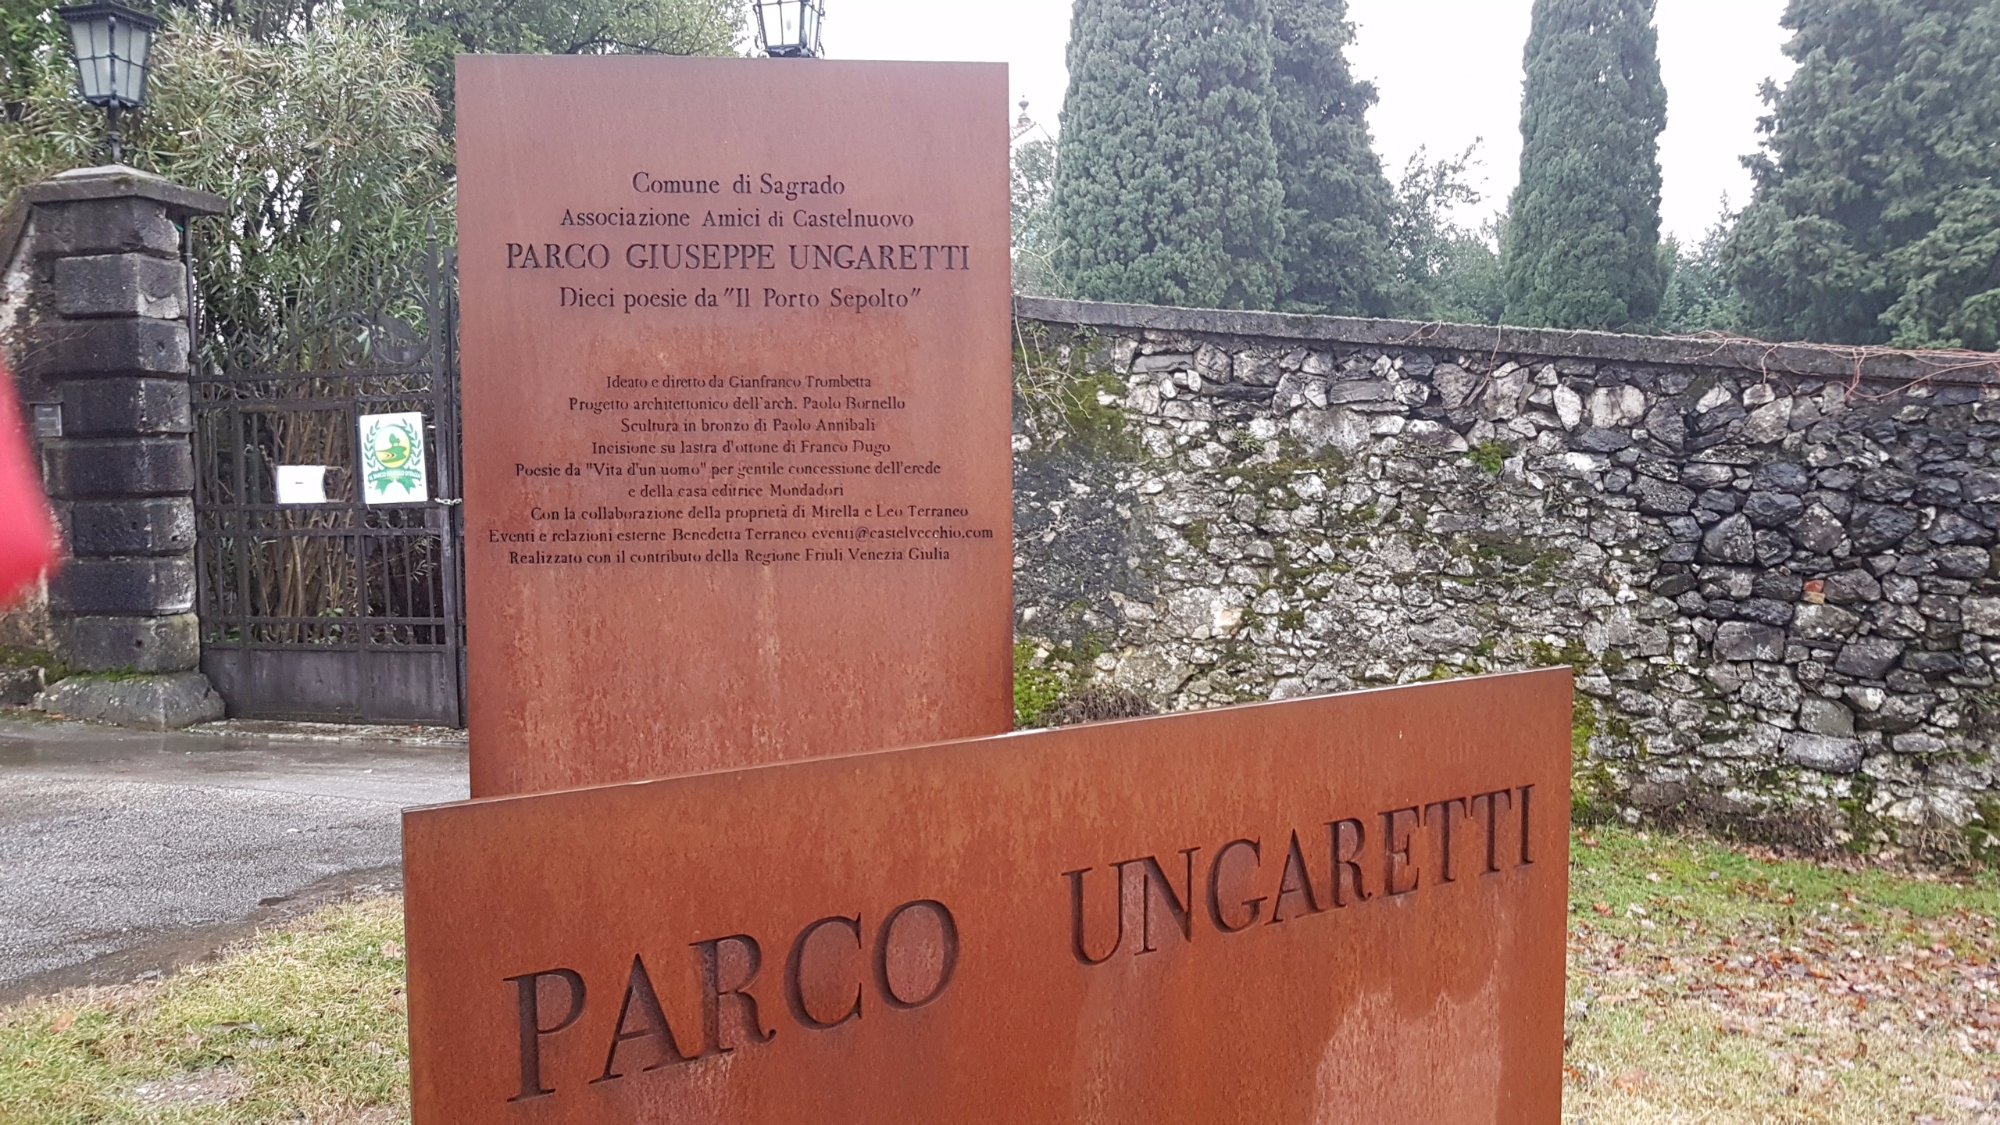 Parco Ungaretti - Il Parco de 